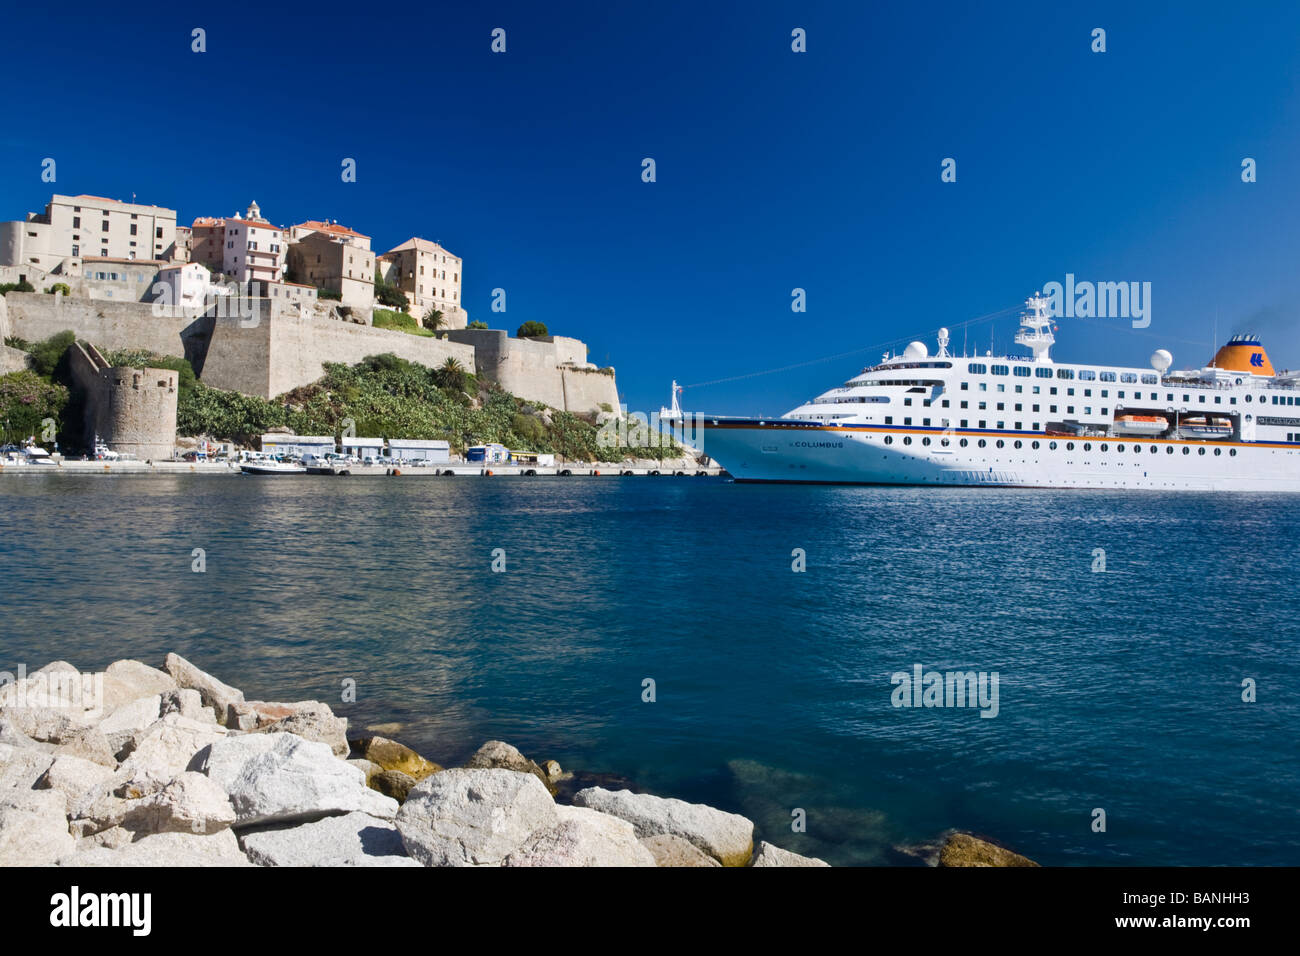 Ein Kreuzfahrtschiff in Calvi Hafen unterhalb der Citadelle Korsika Frankreich Stockfoto